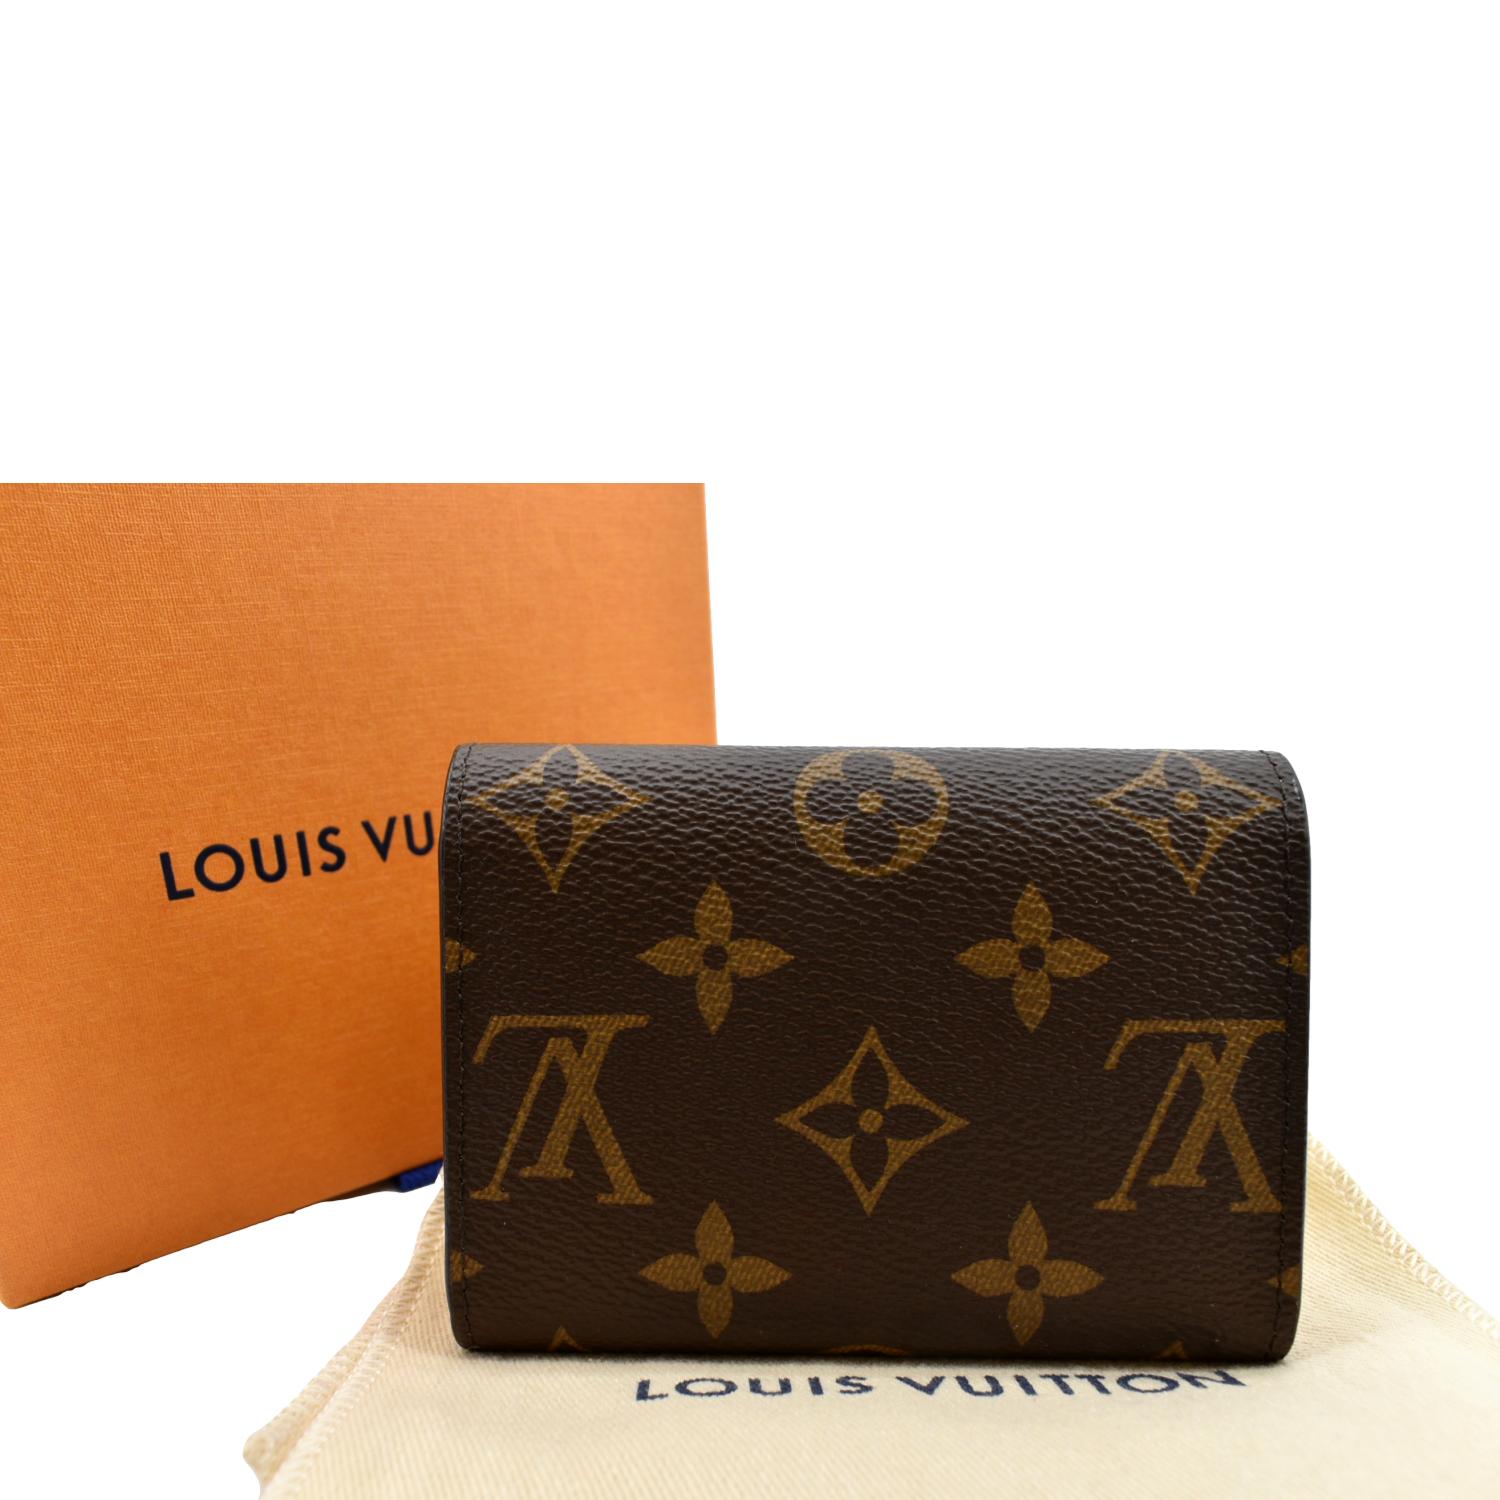 Louis Vuitton - Rosalie Coin Purse - Monogram - Rose Ballerine - Women - Luxury